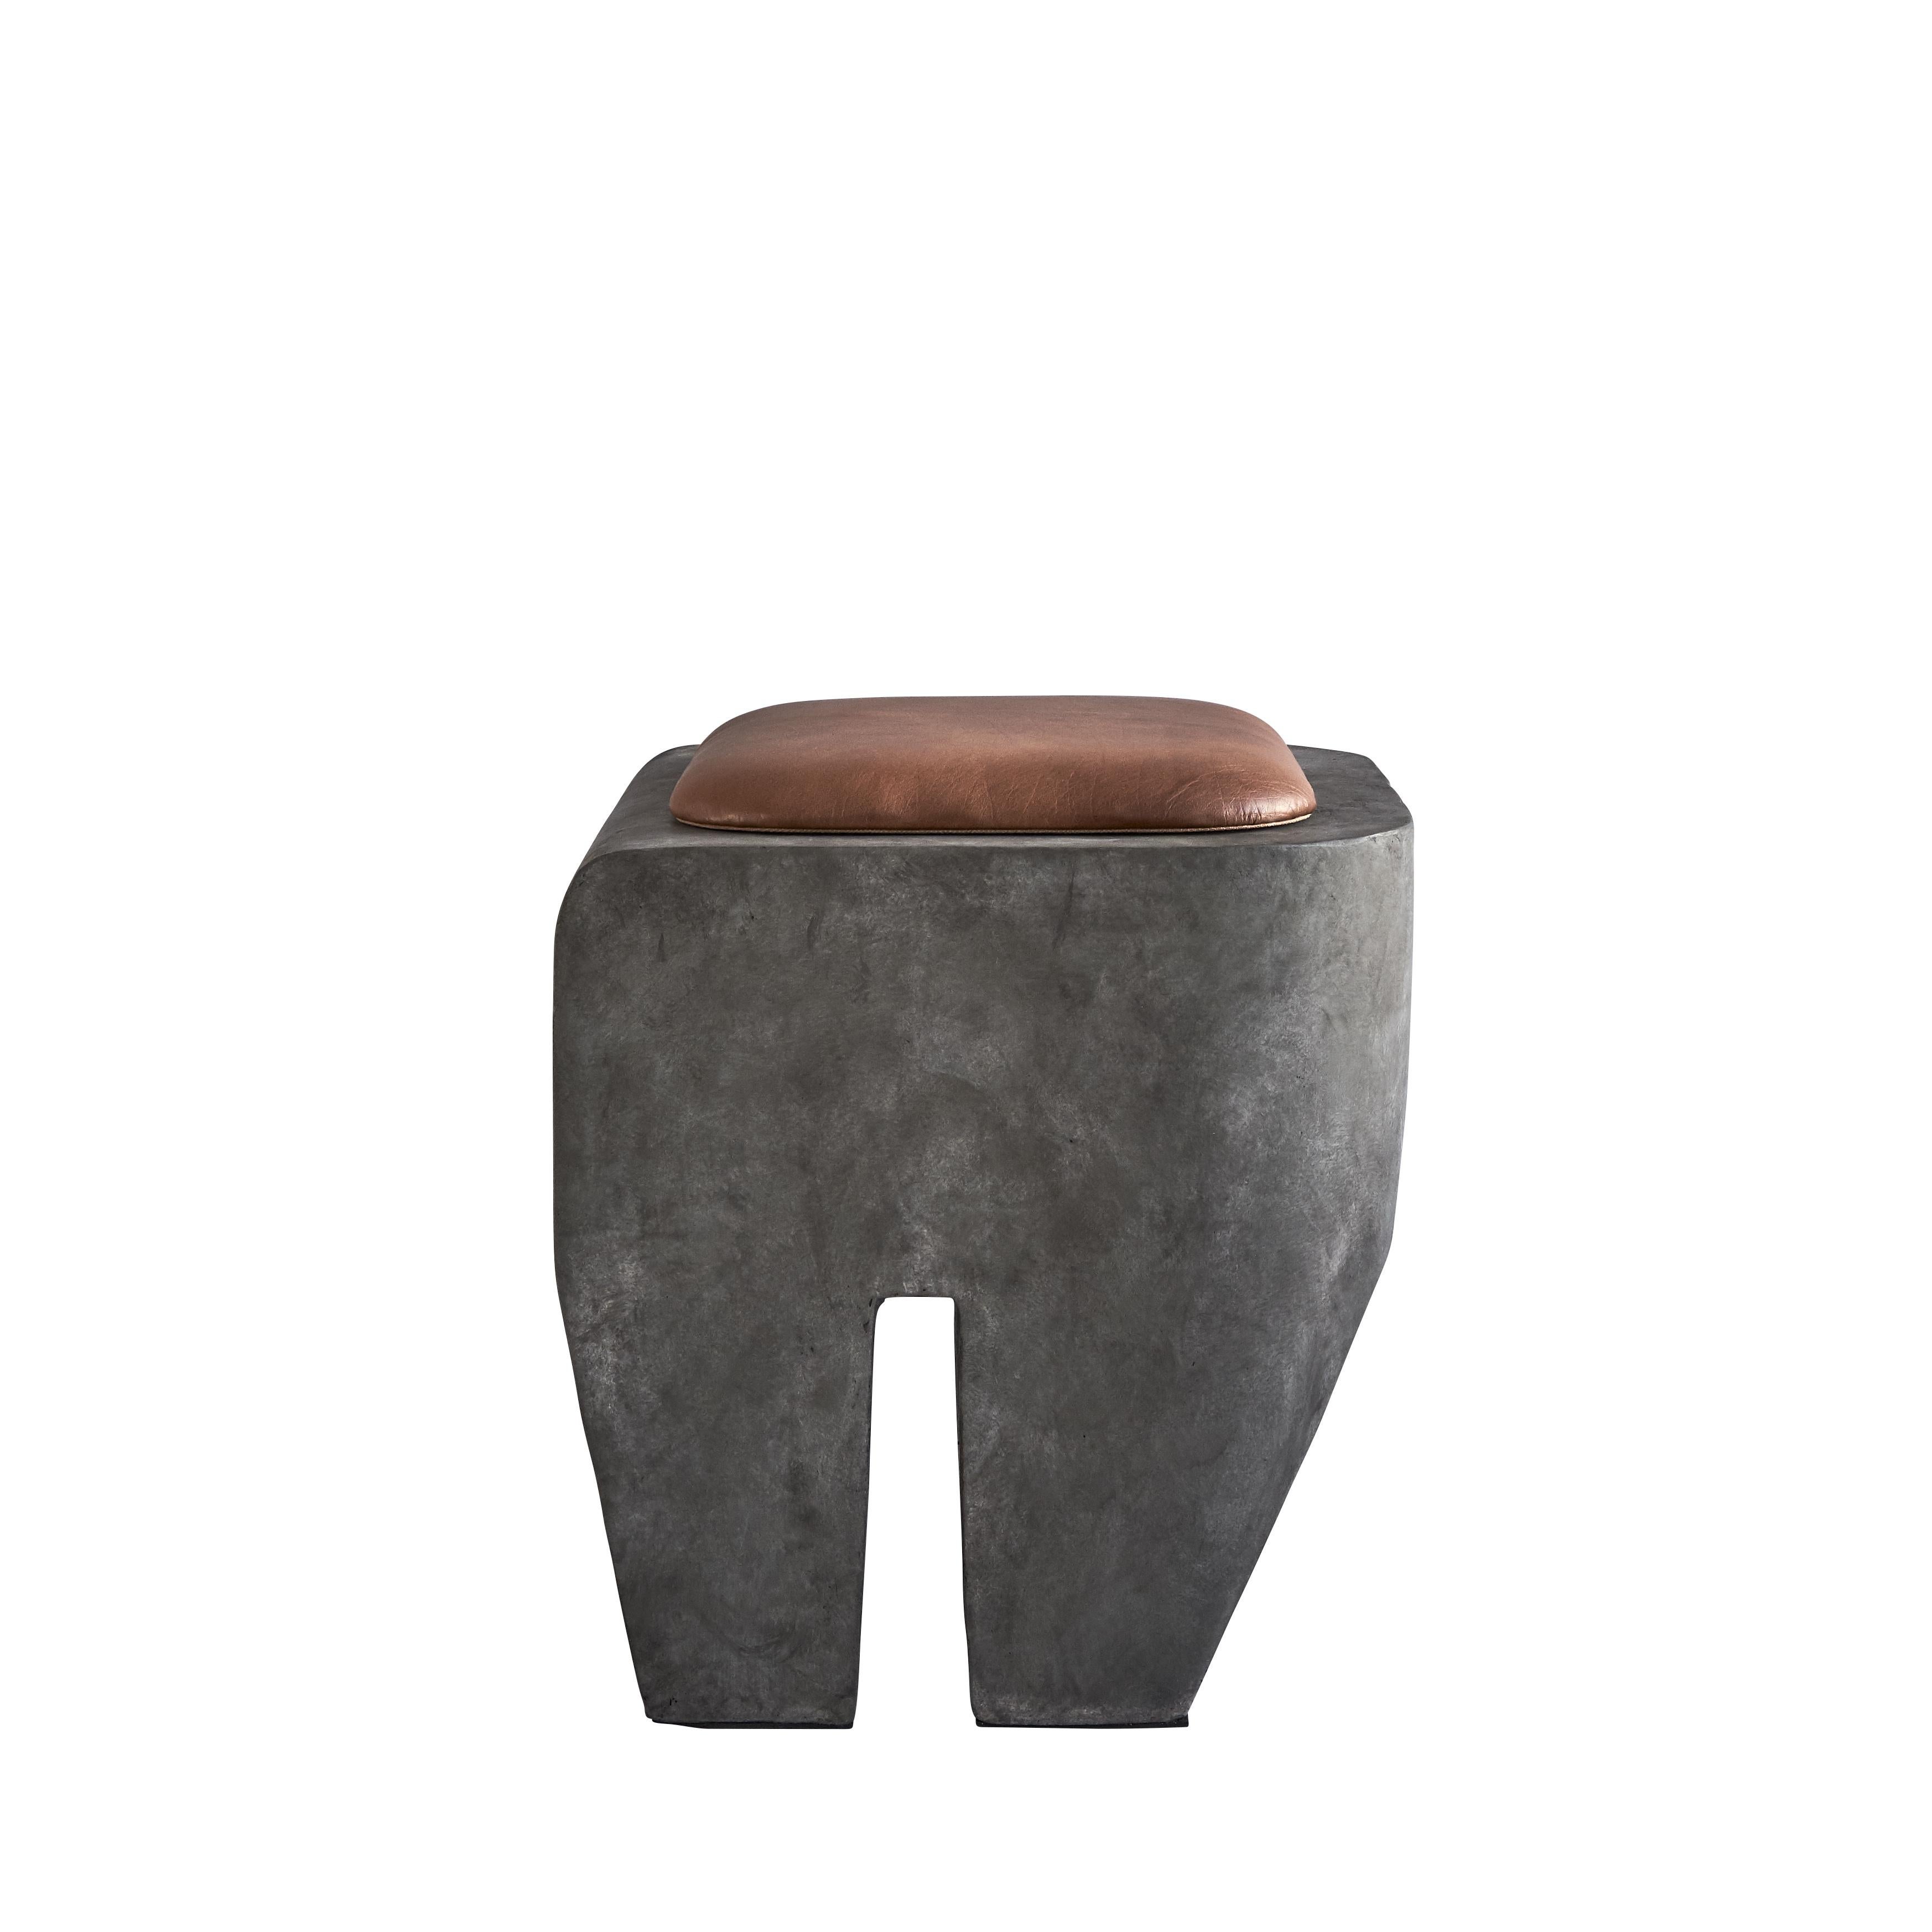 Sculpt stool + cushion by 101 Copenhagen
Designed by Kristian Sofus Hansen & Tommy Hyldahl
Dimensions: L45 / W45 /H45 cm.
Materials: fiber concrete; cushion: leather.

The design of the Sculpt stool is inspired by the Brutalist architecture